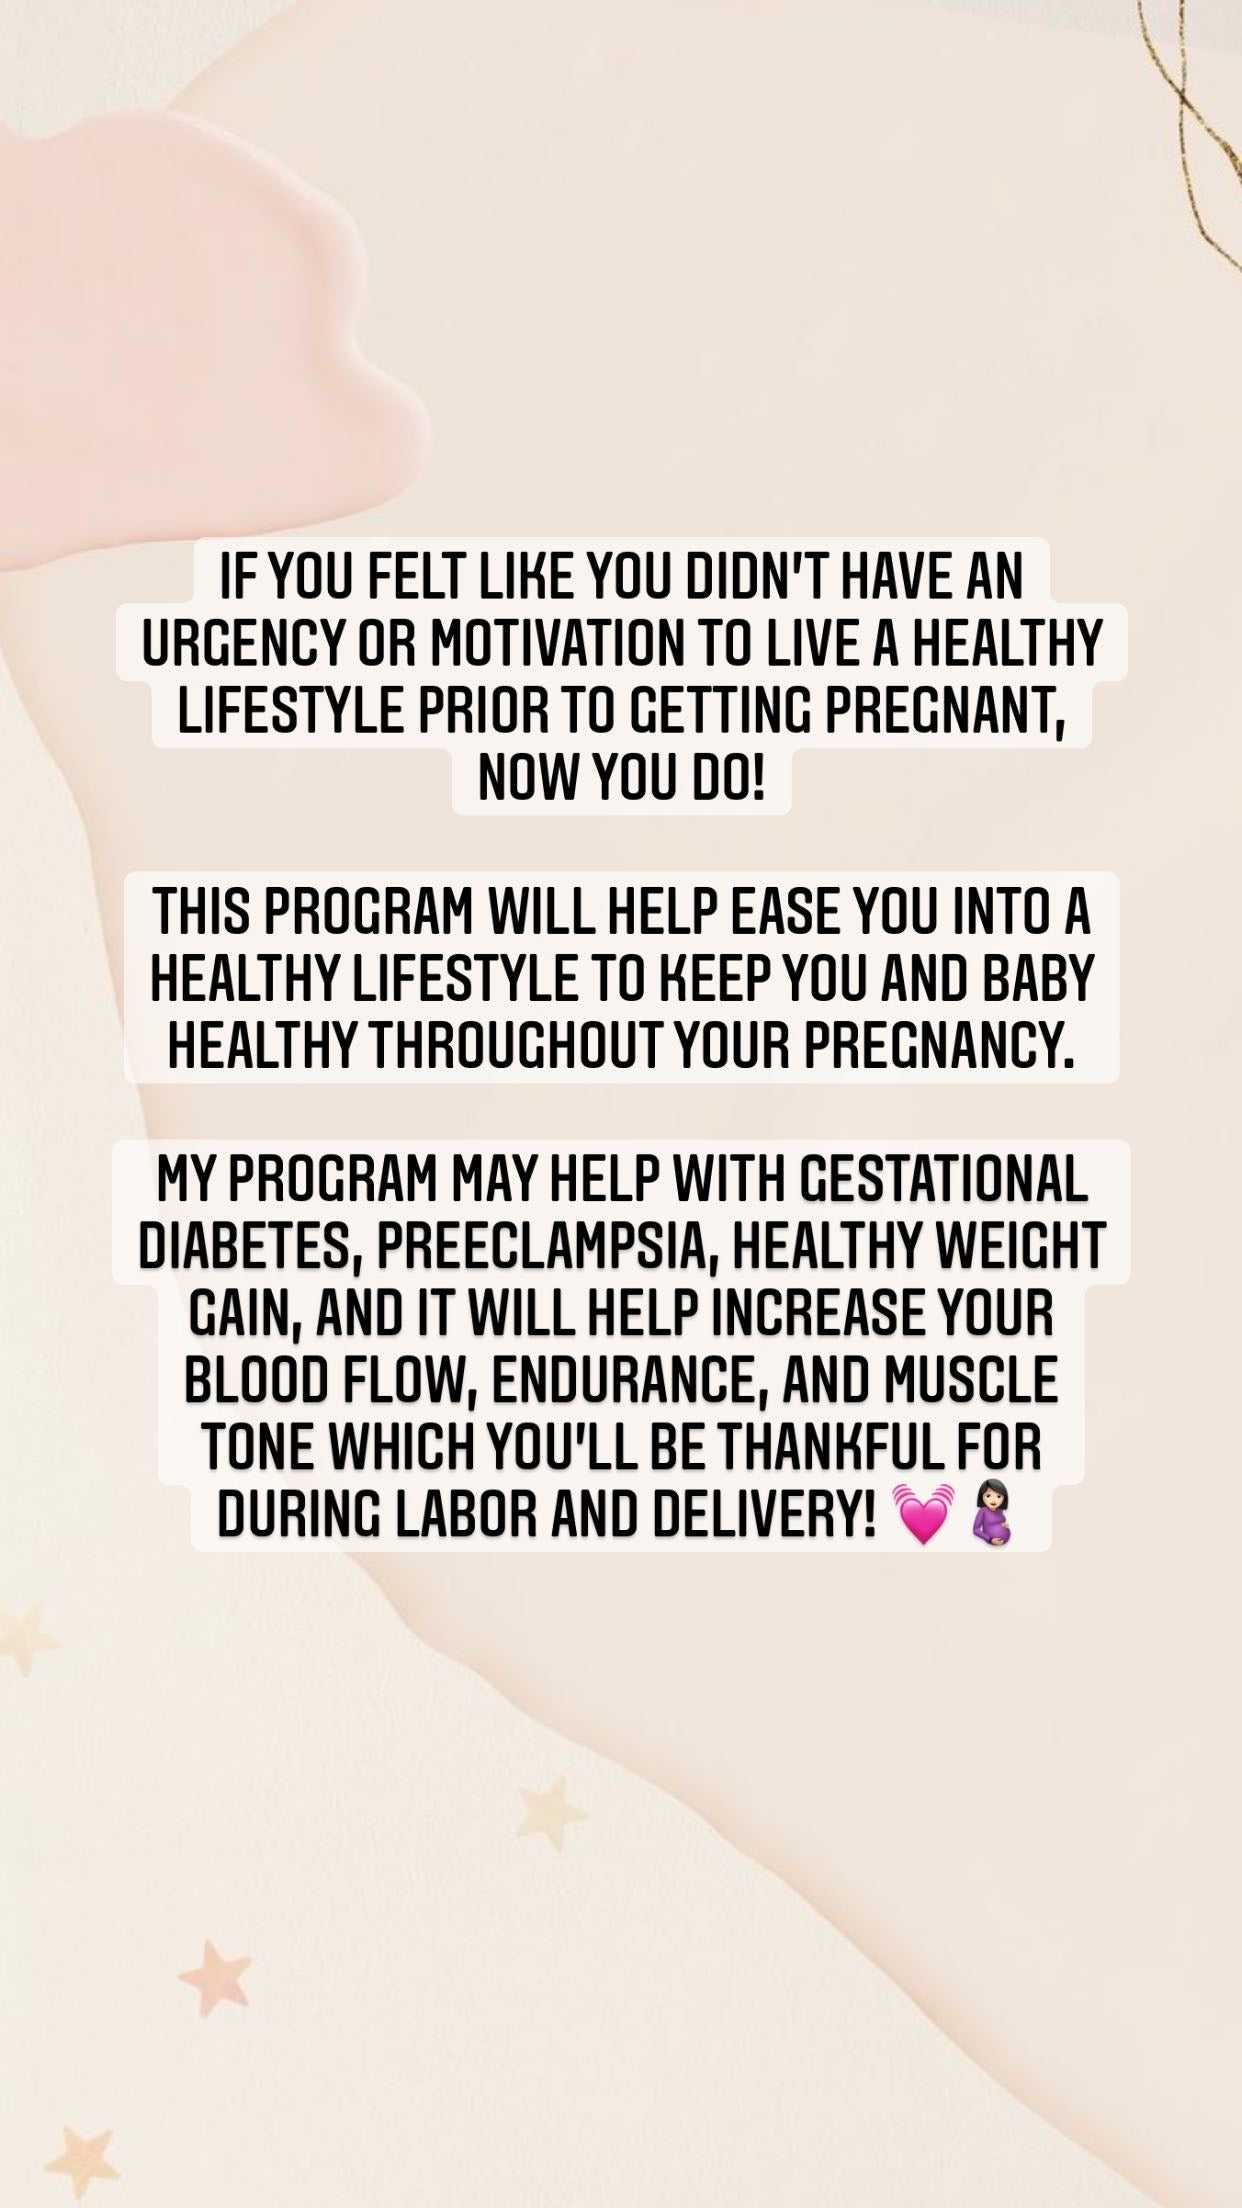 GFWG Pregnancy Program